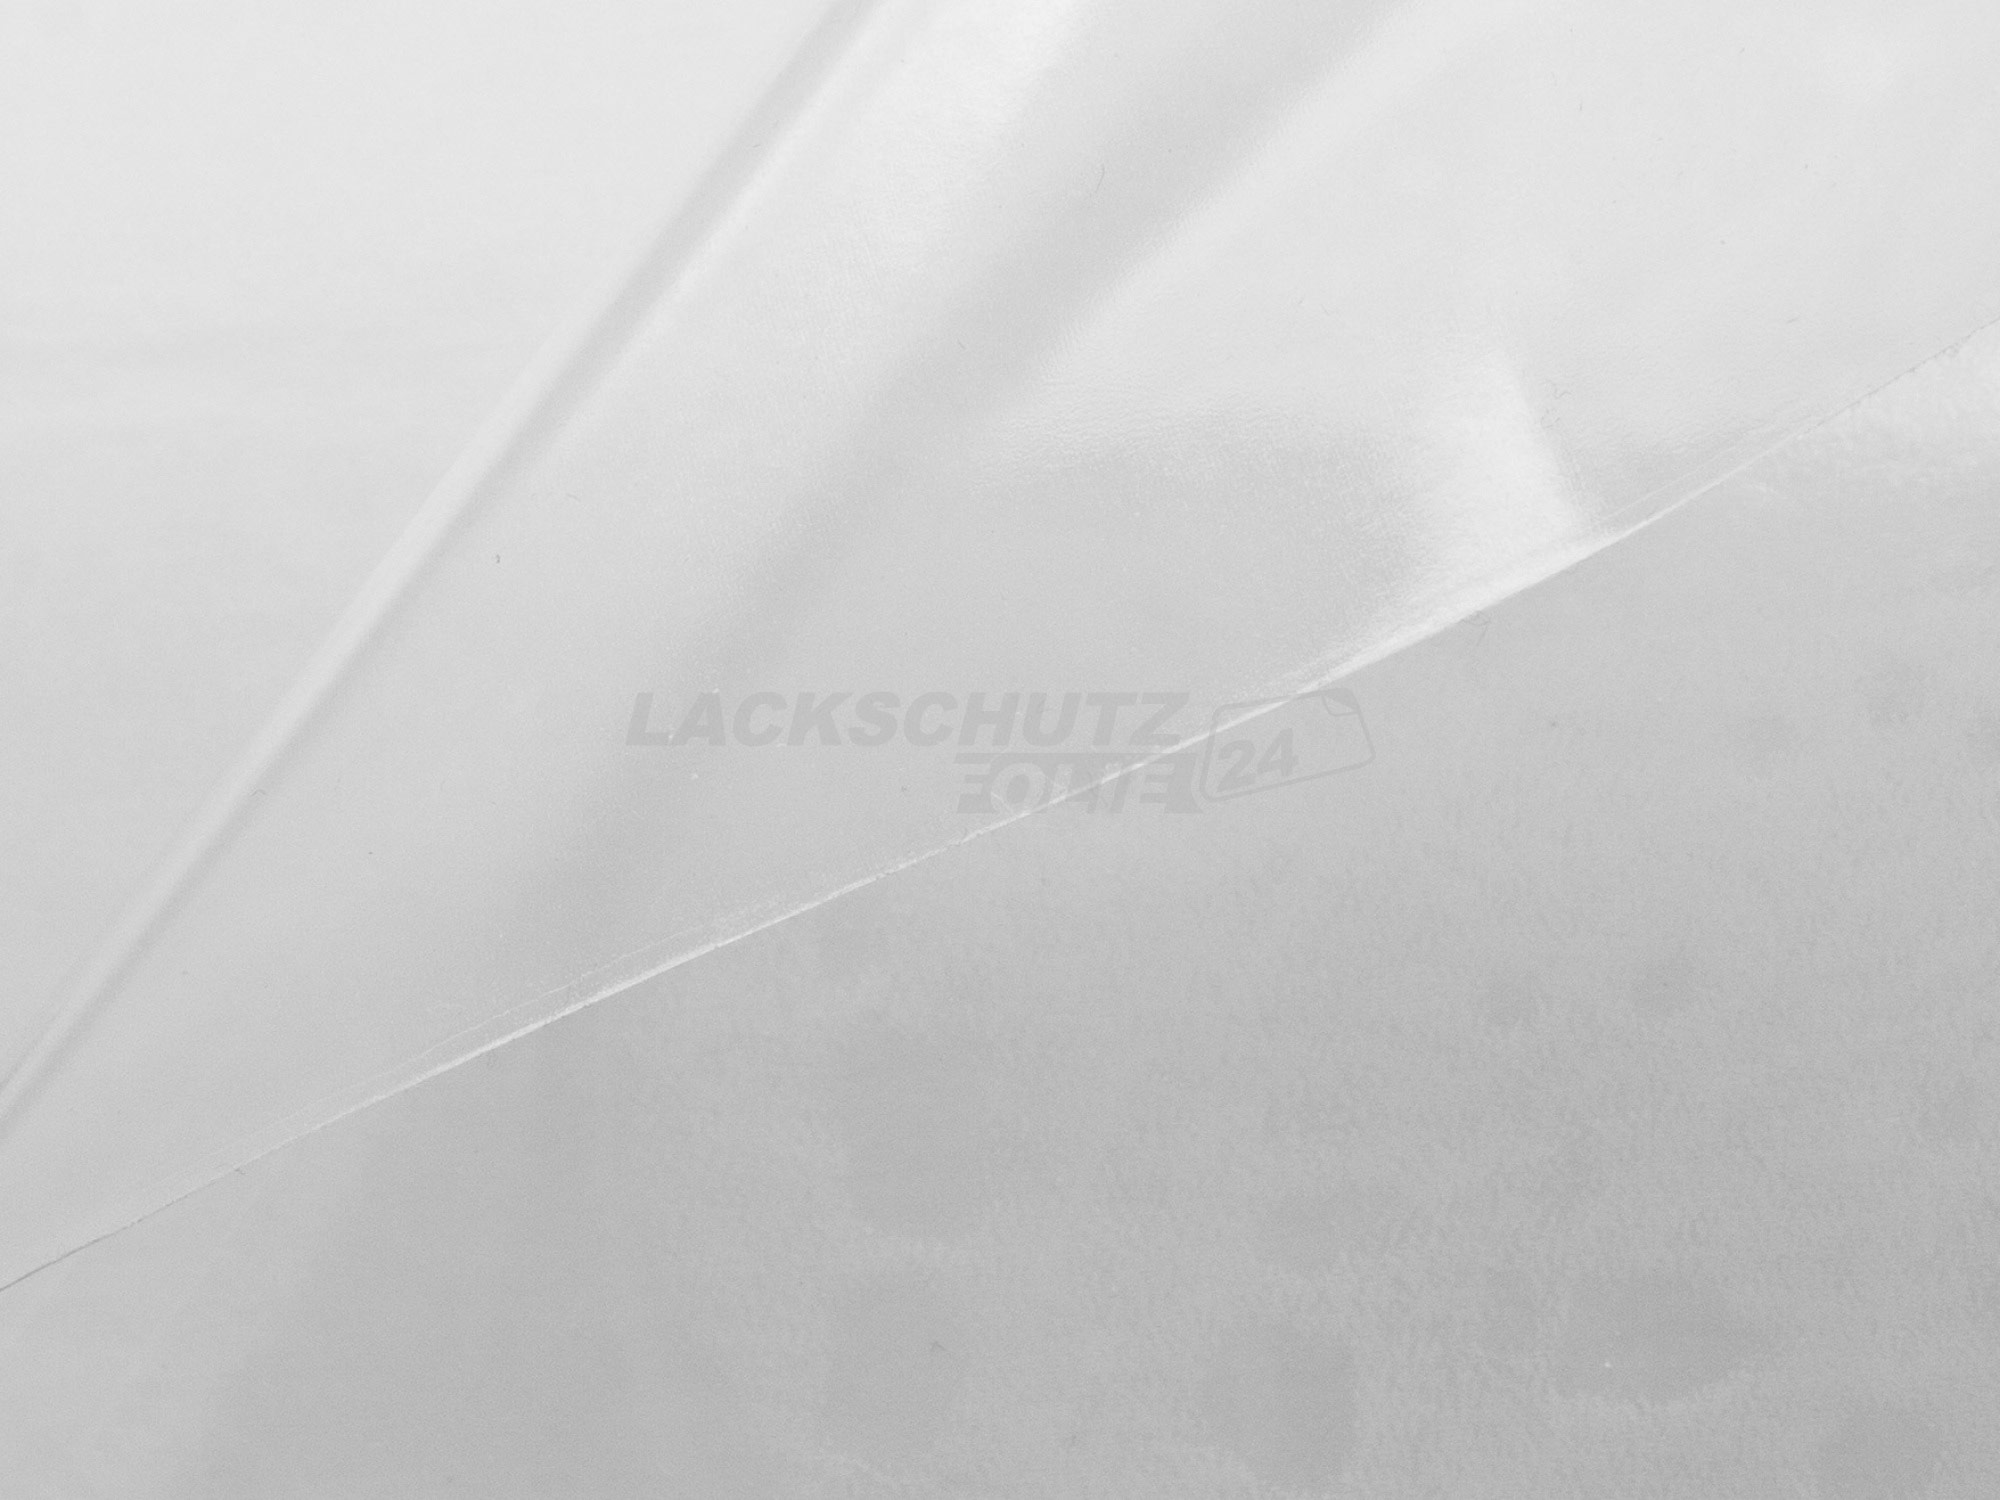 Ladekantenschutzfolie - Transparent Glatt Hochglänzend 150 µm stark für VW / Volkswagen Touran (I) Typ 1T, BJ 2003-11/2006